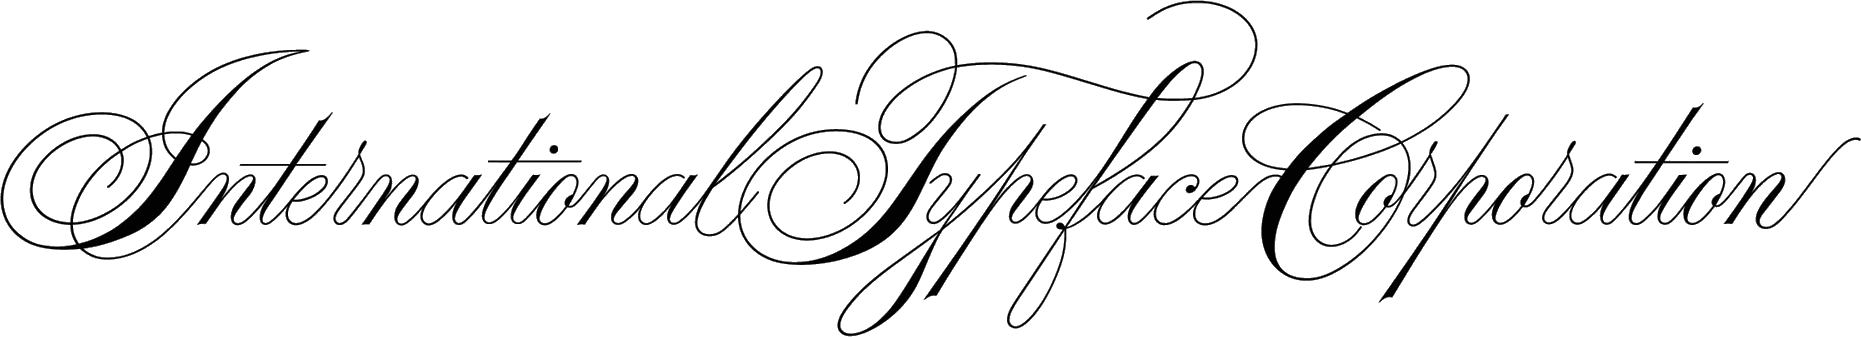 International Typeface Corporation Logo by Ed Benguiat 1970